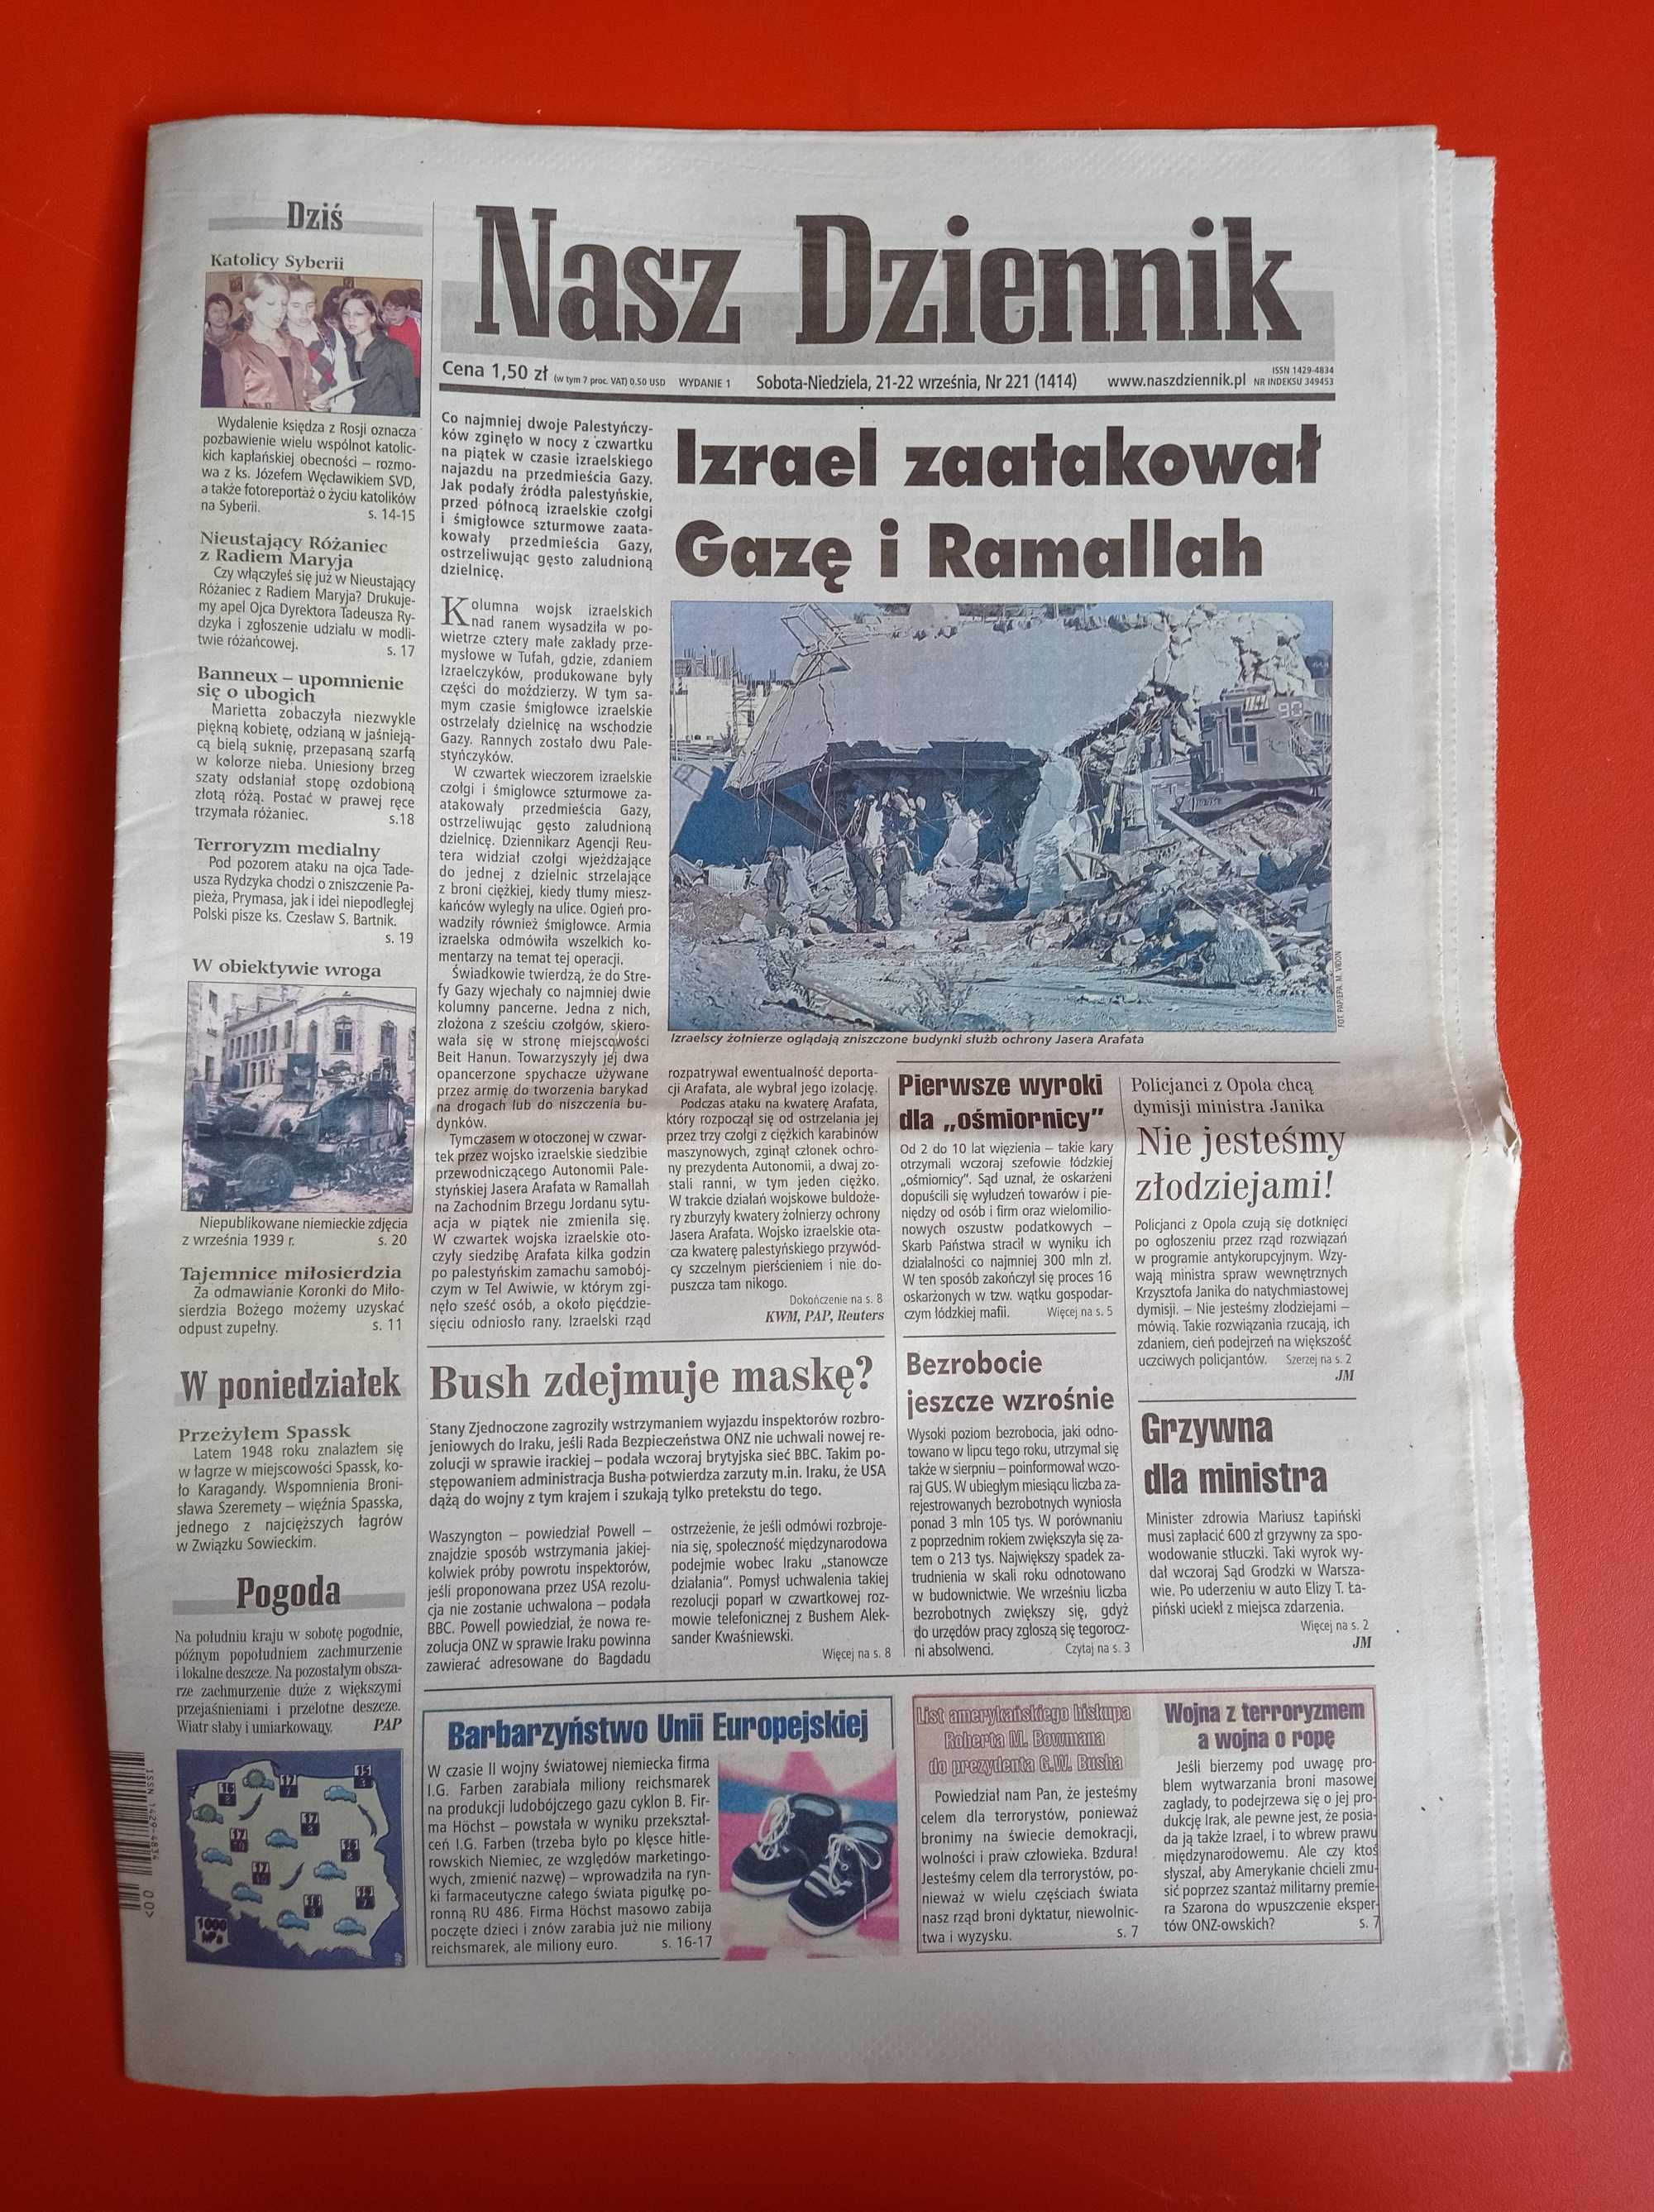 Nasz Dziennik, nr 221/2002, 21-22 września 2002